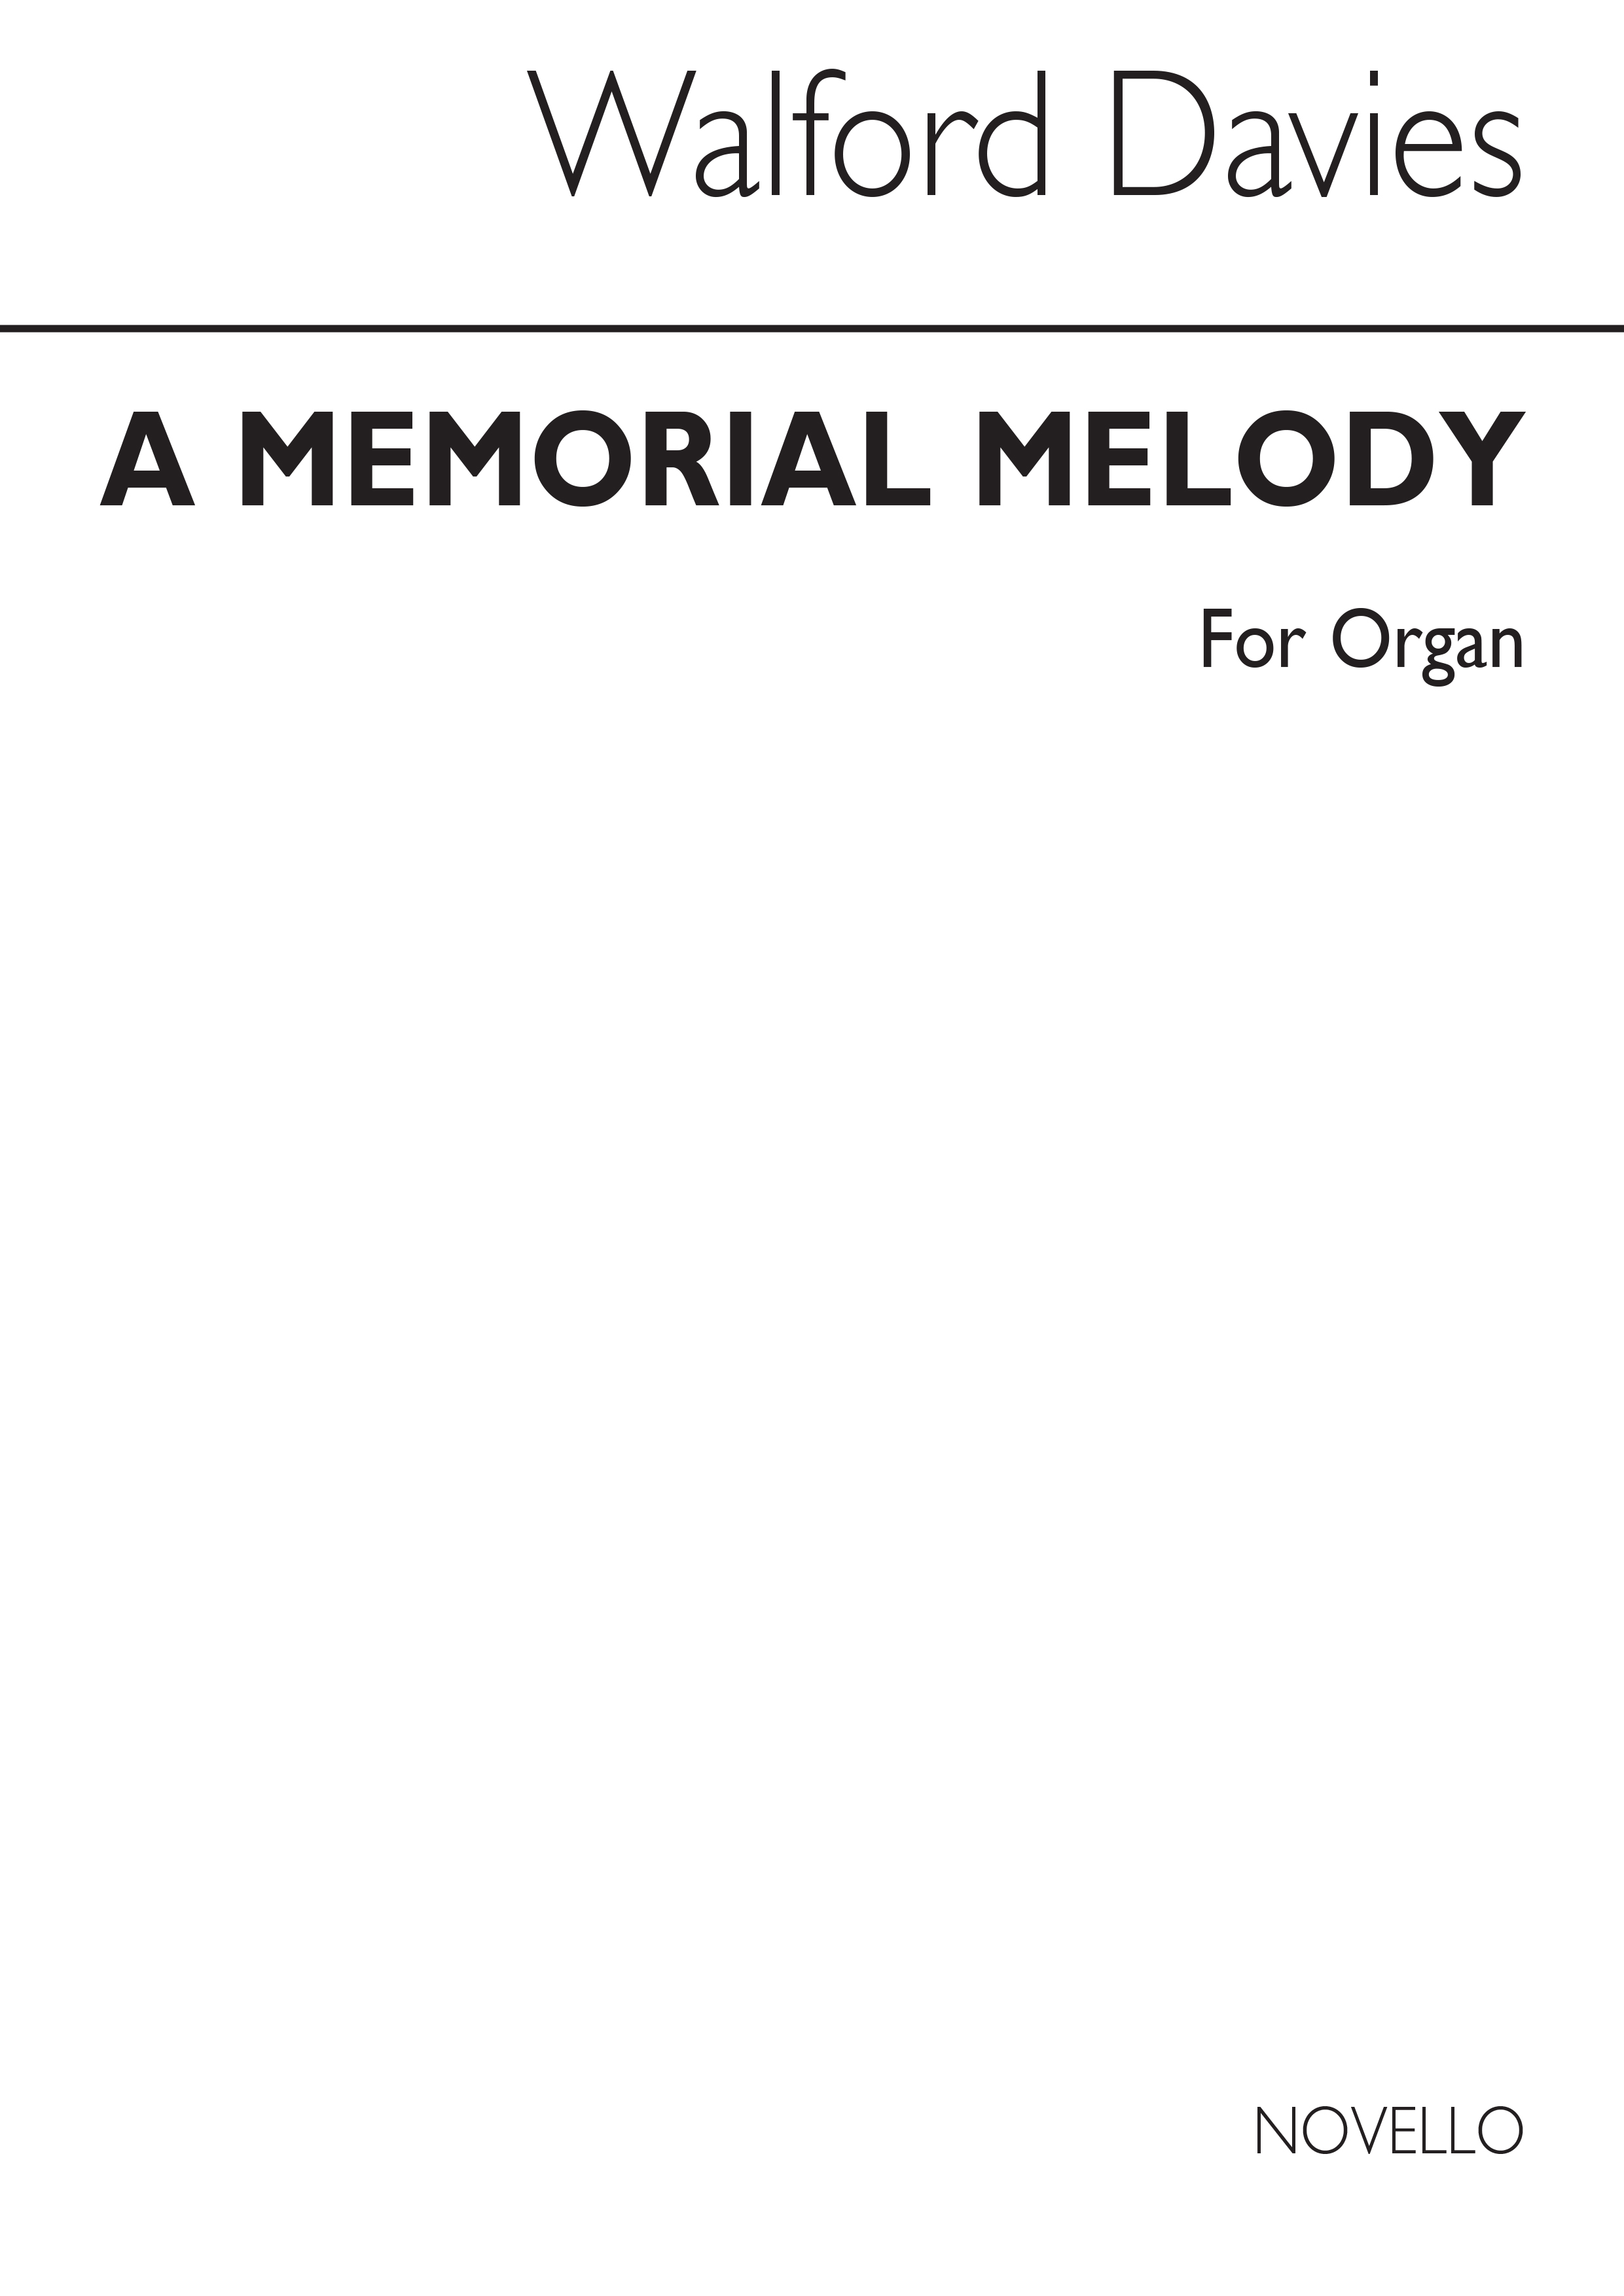 Walford Davies: A Memorial Melody For Organ